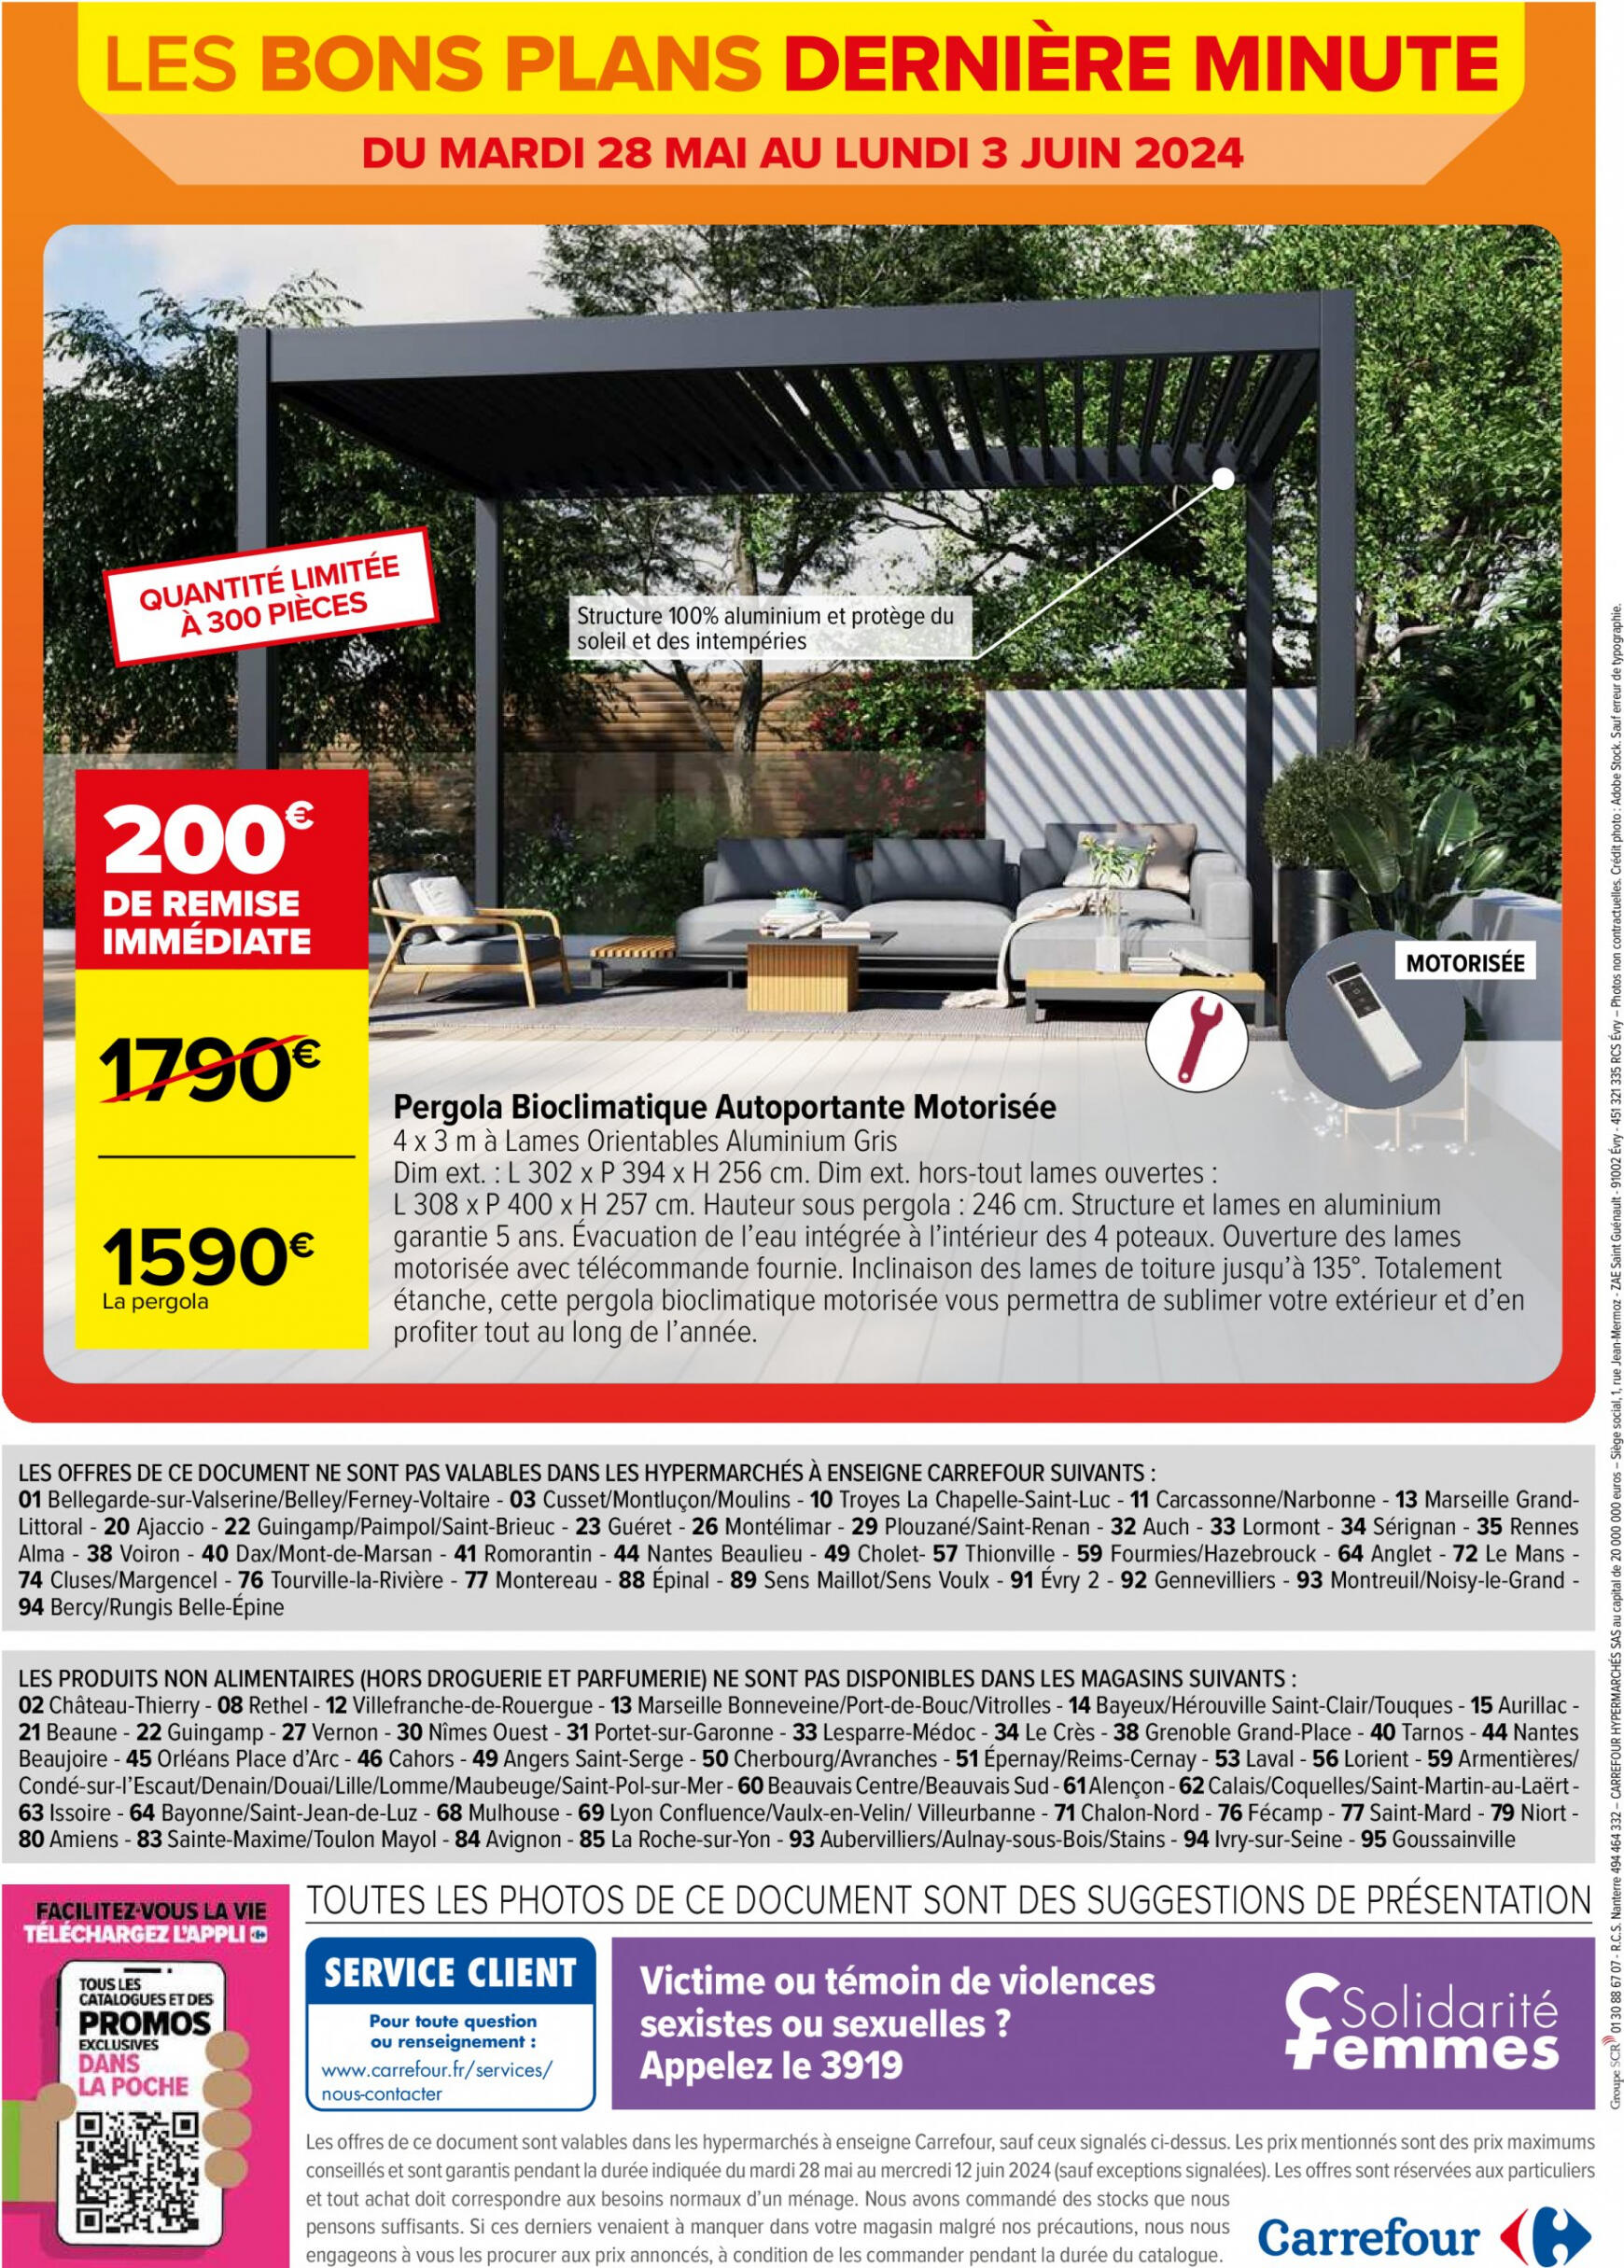 carrefour - Prospectus Carrefour - Les Bons Plans Derniere Minute actuel 28.05. - 03.06. - page: 6